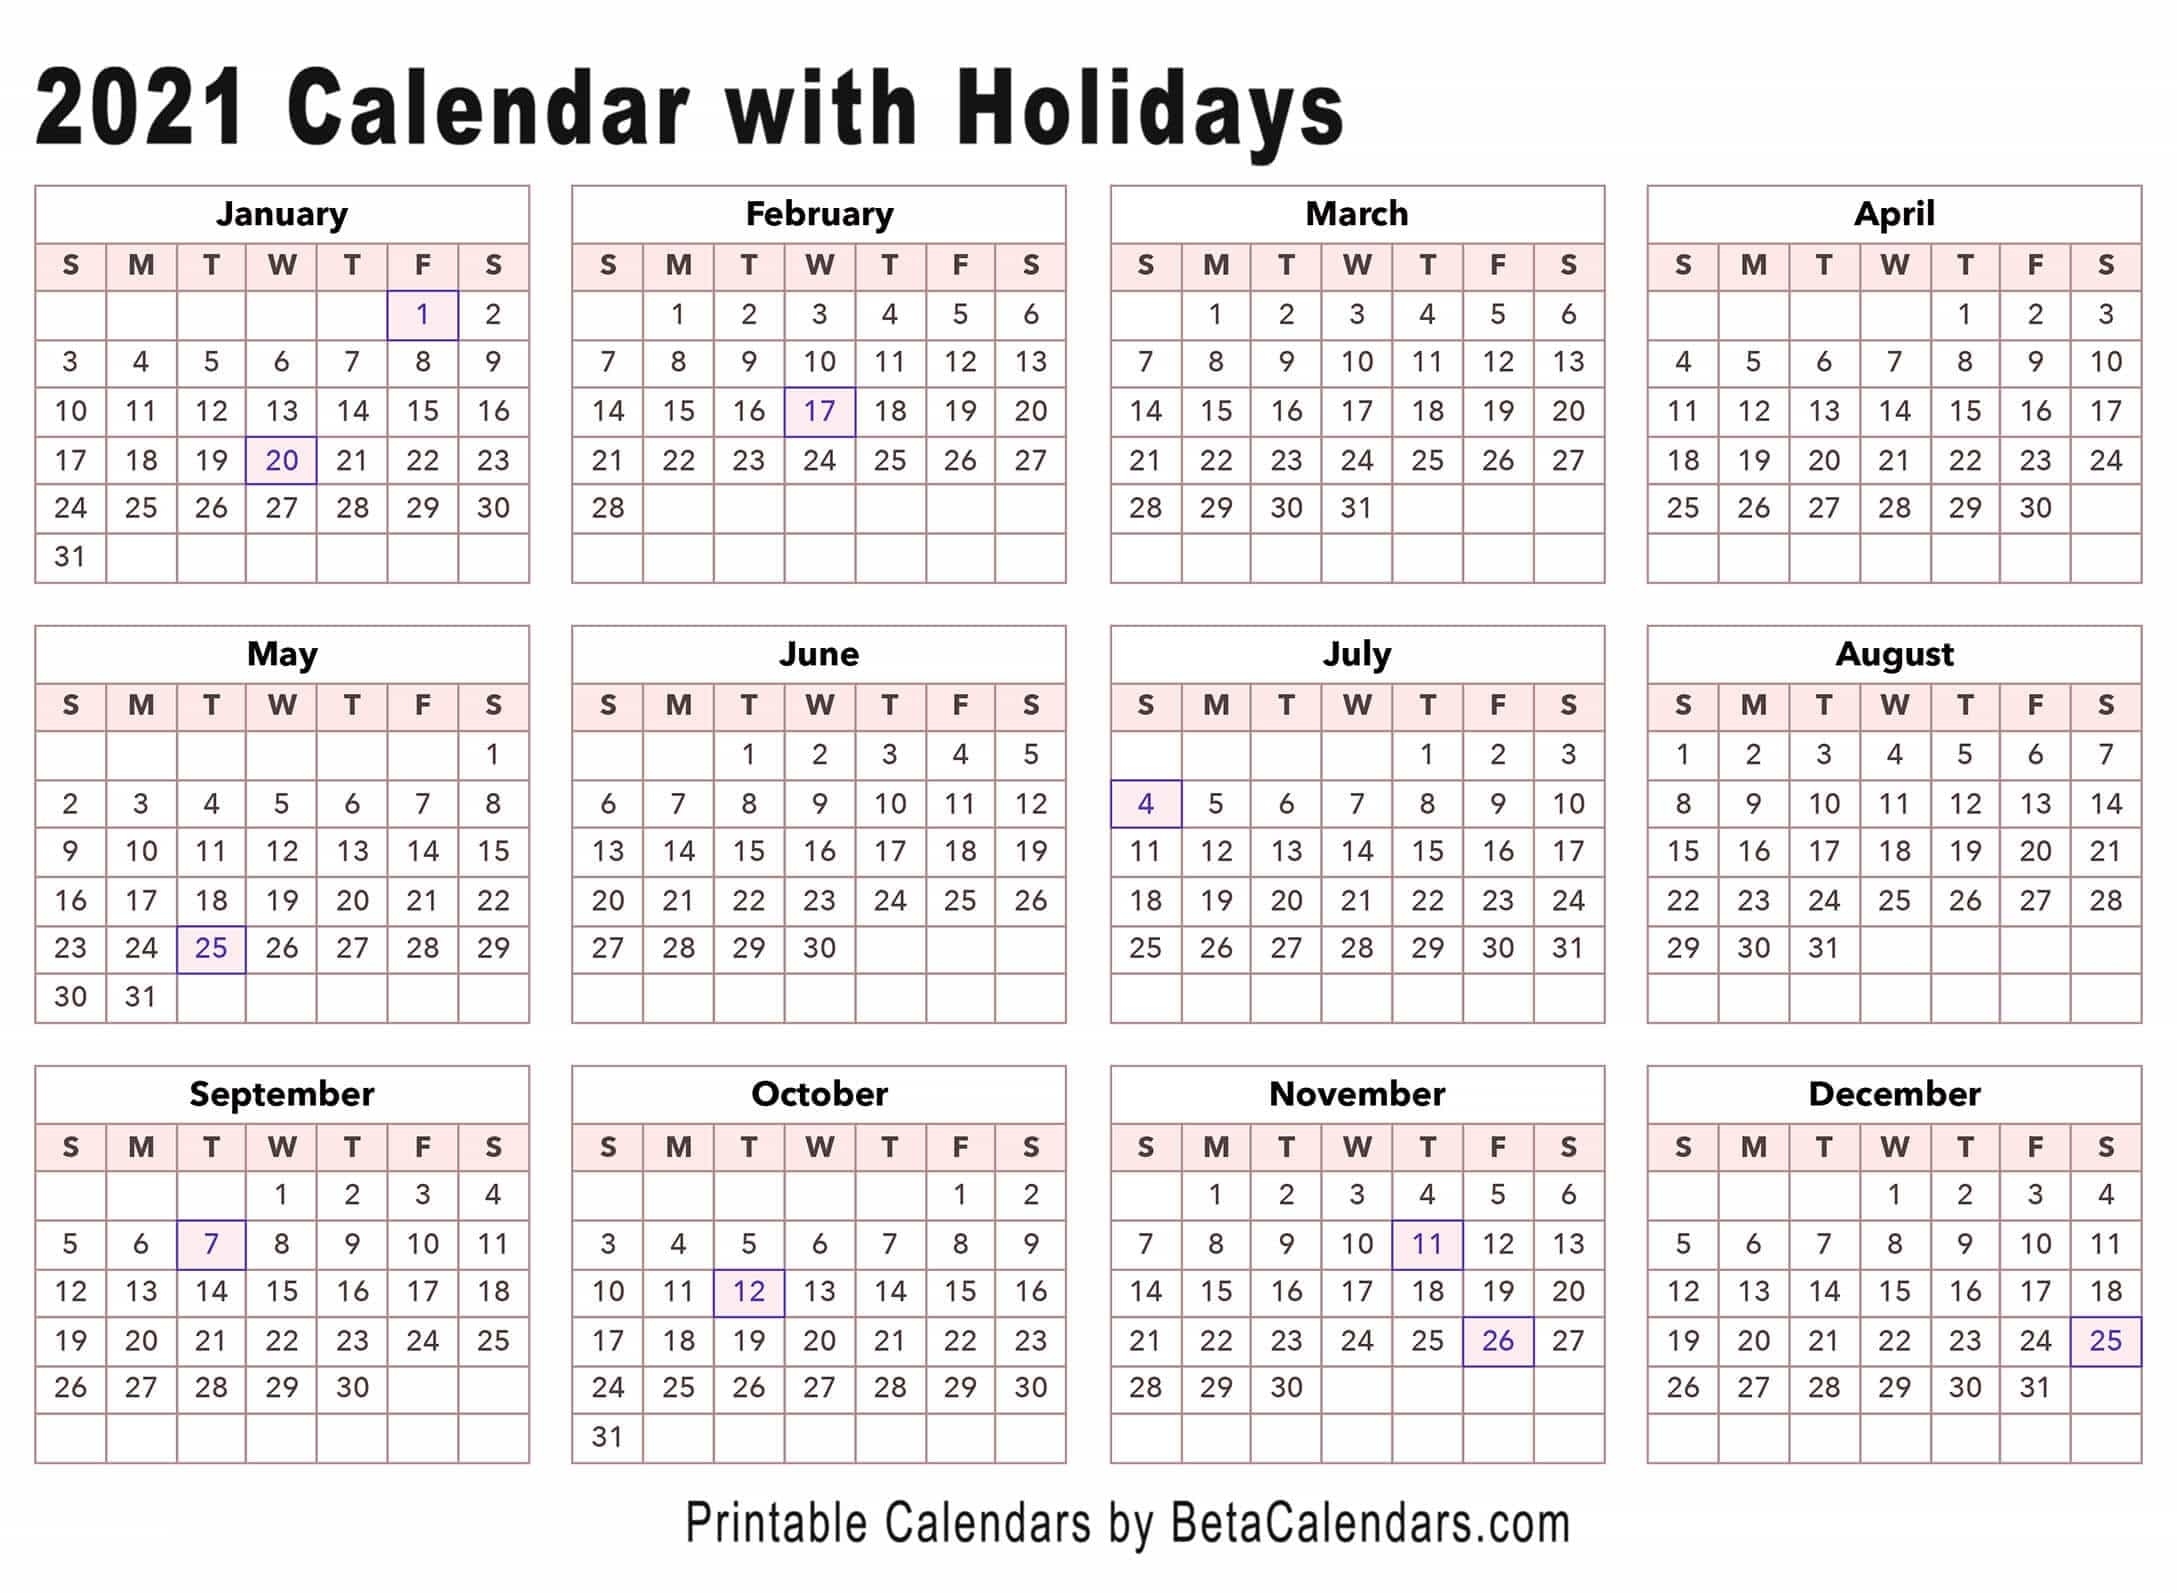 2021 Calendar - Beta Calendars Calendar 2021 With Holidays